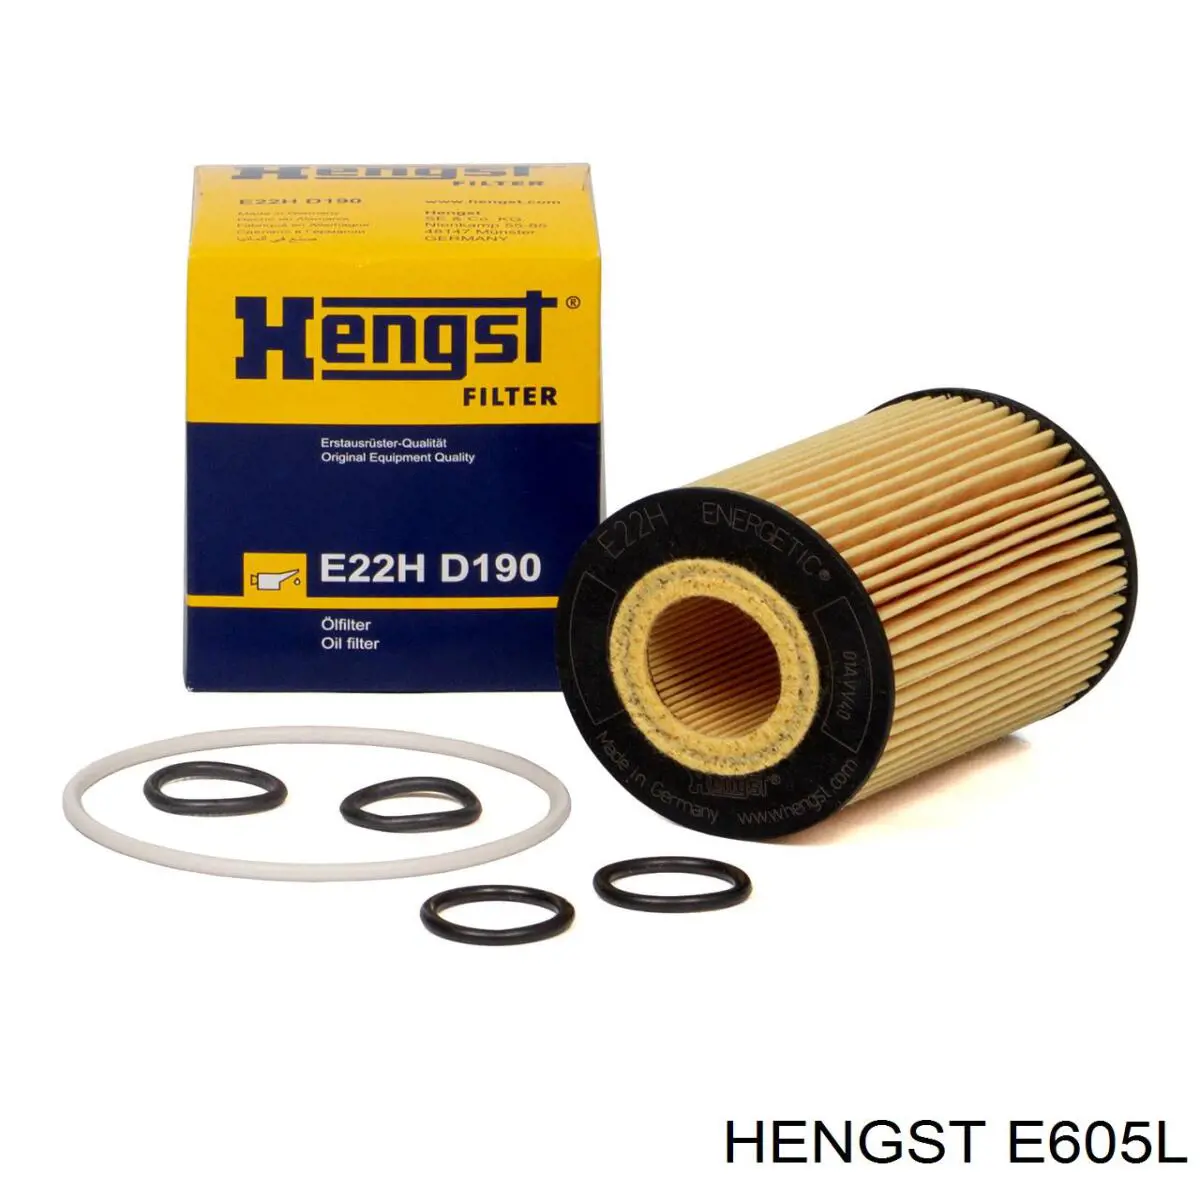 E605L Hengst filtro de aire